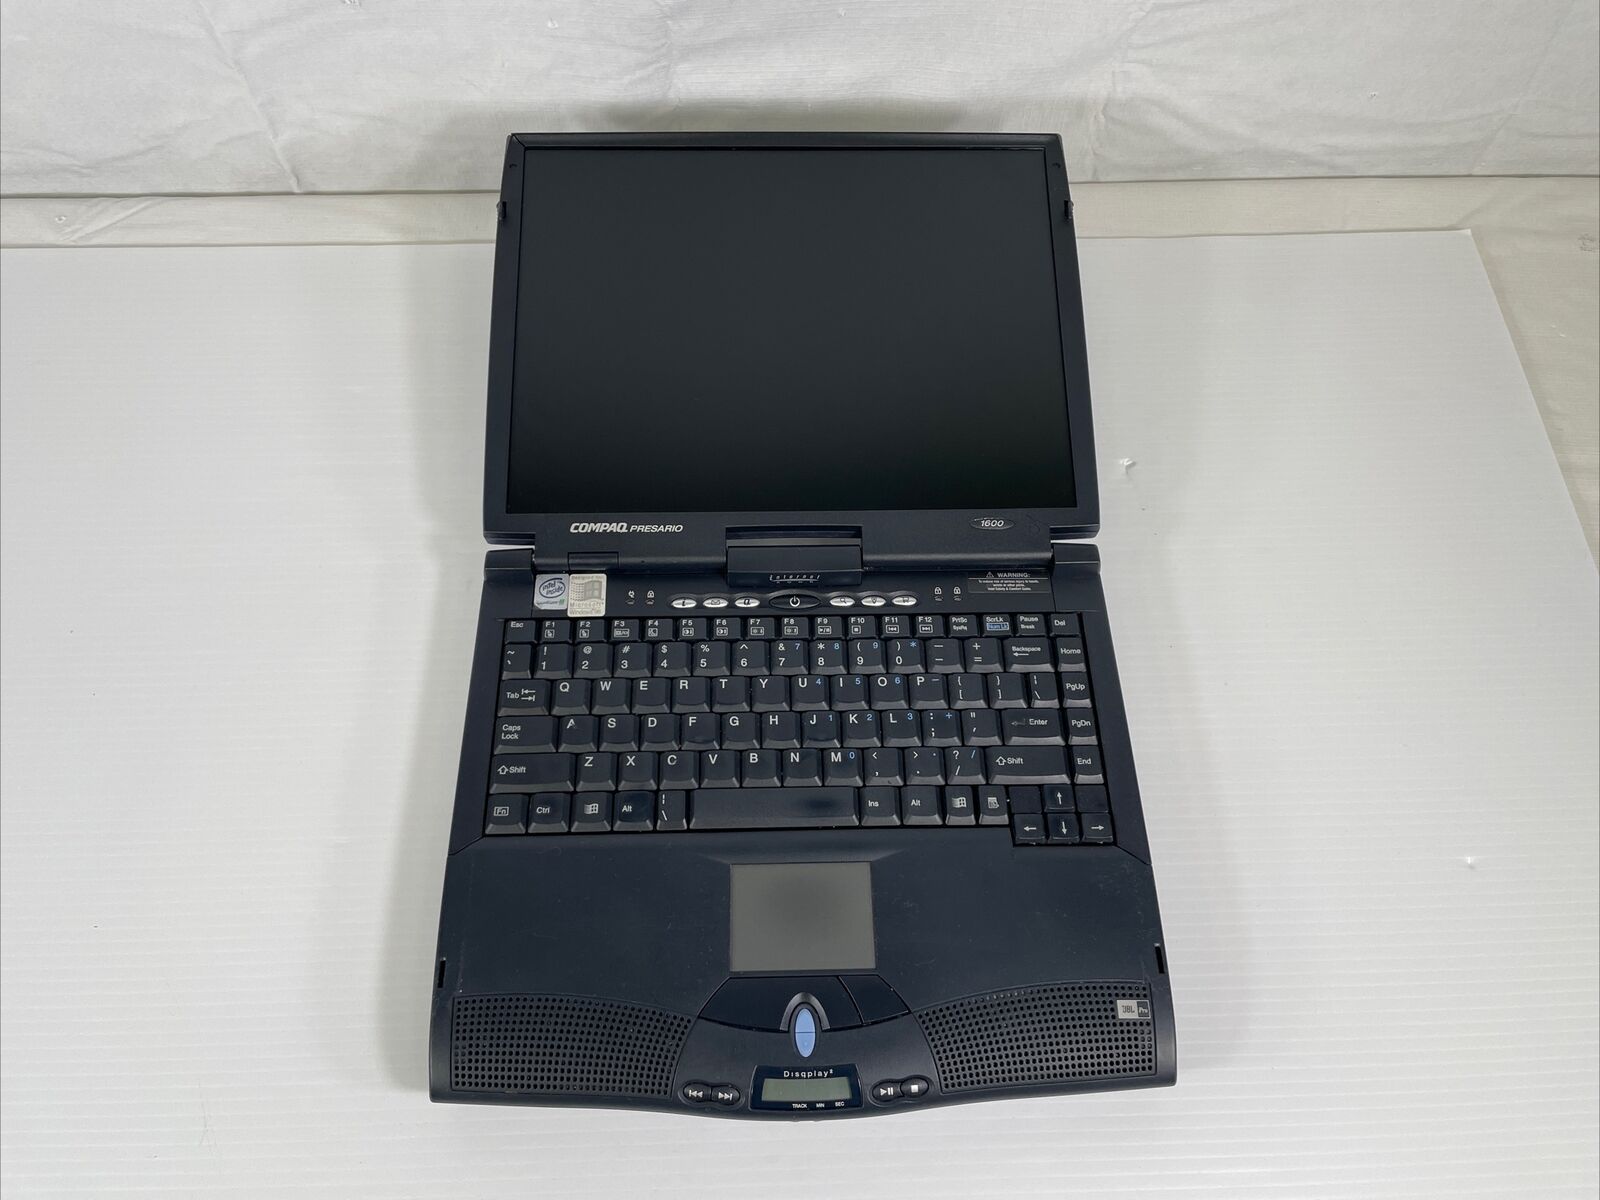 Rare Vintage Compaq Presario 1600 Laptop Pentium II 300MHz -FOR PARTS BAD SCREEN